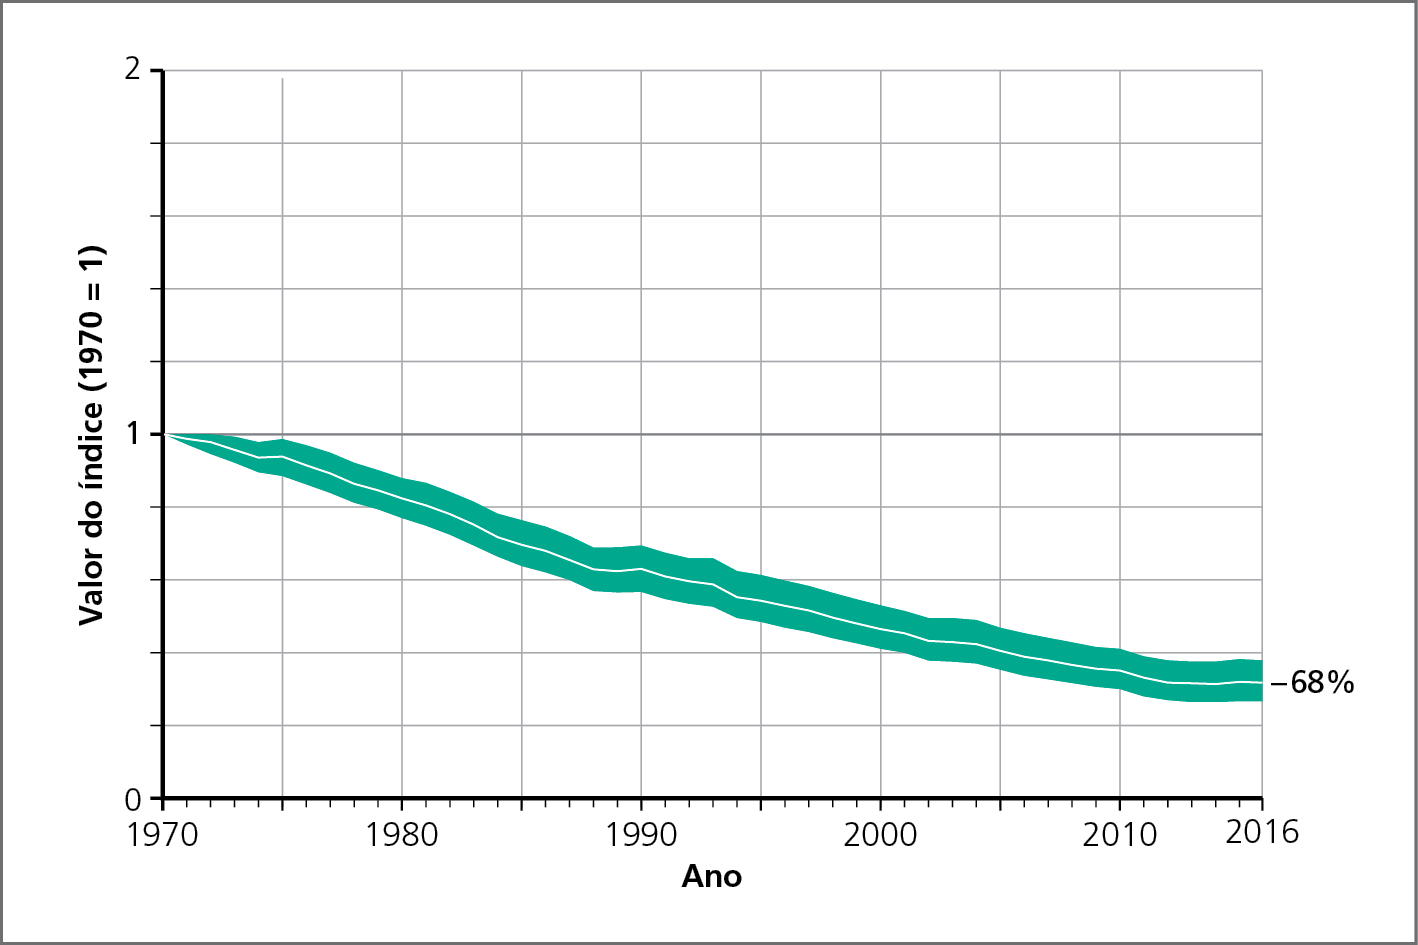 Gráfico. Índice Global do Planeta Vivo – 1970 a 2016. Gráfico de linha mostrando a evolução do Índice Global do Planeta Vivo no período retratado. O valor do índice (1970 igual a 1) está apresentado no eixo vertical e os anos estão apresentados no eixo horizontal.
1970: 1.
1980: 0,8.
1990: 0,6.
2000: 0,4.
2010: 0,4.
2016: 0,4.
Declínio de 68%.